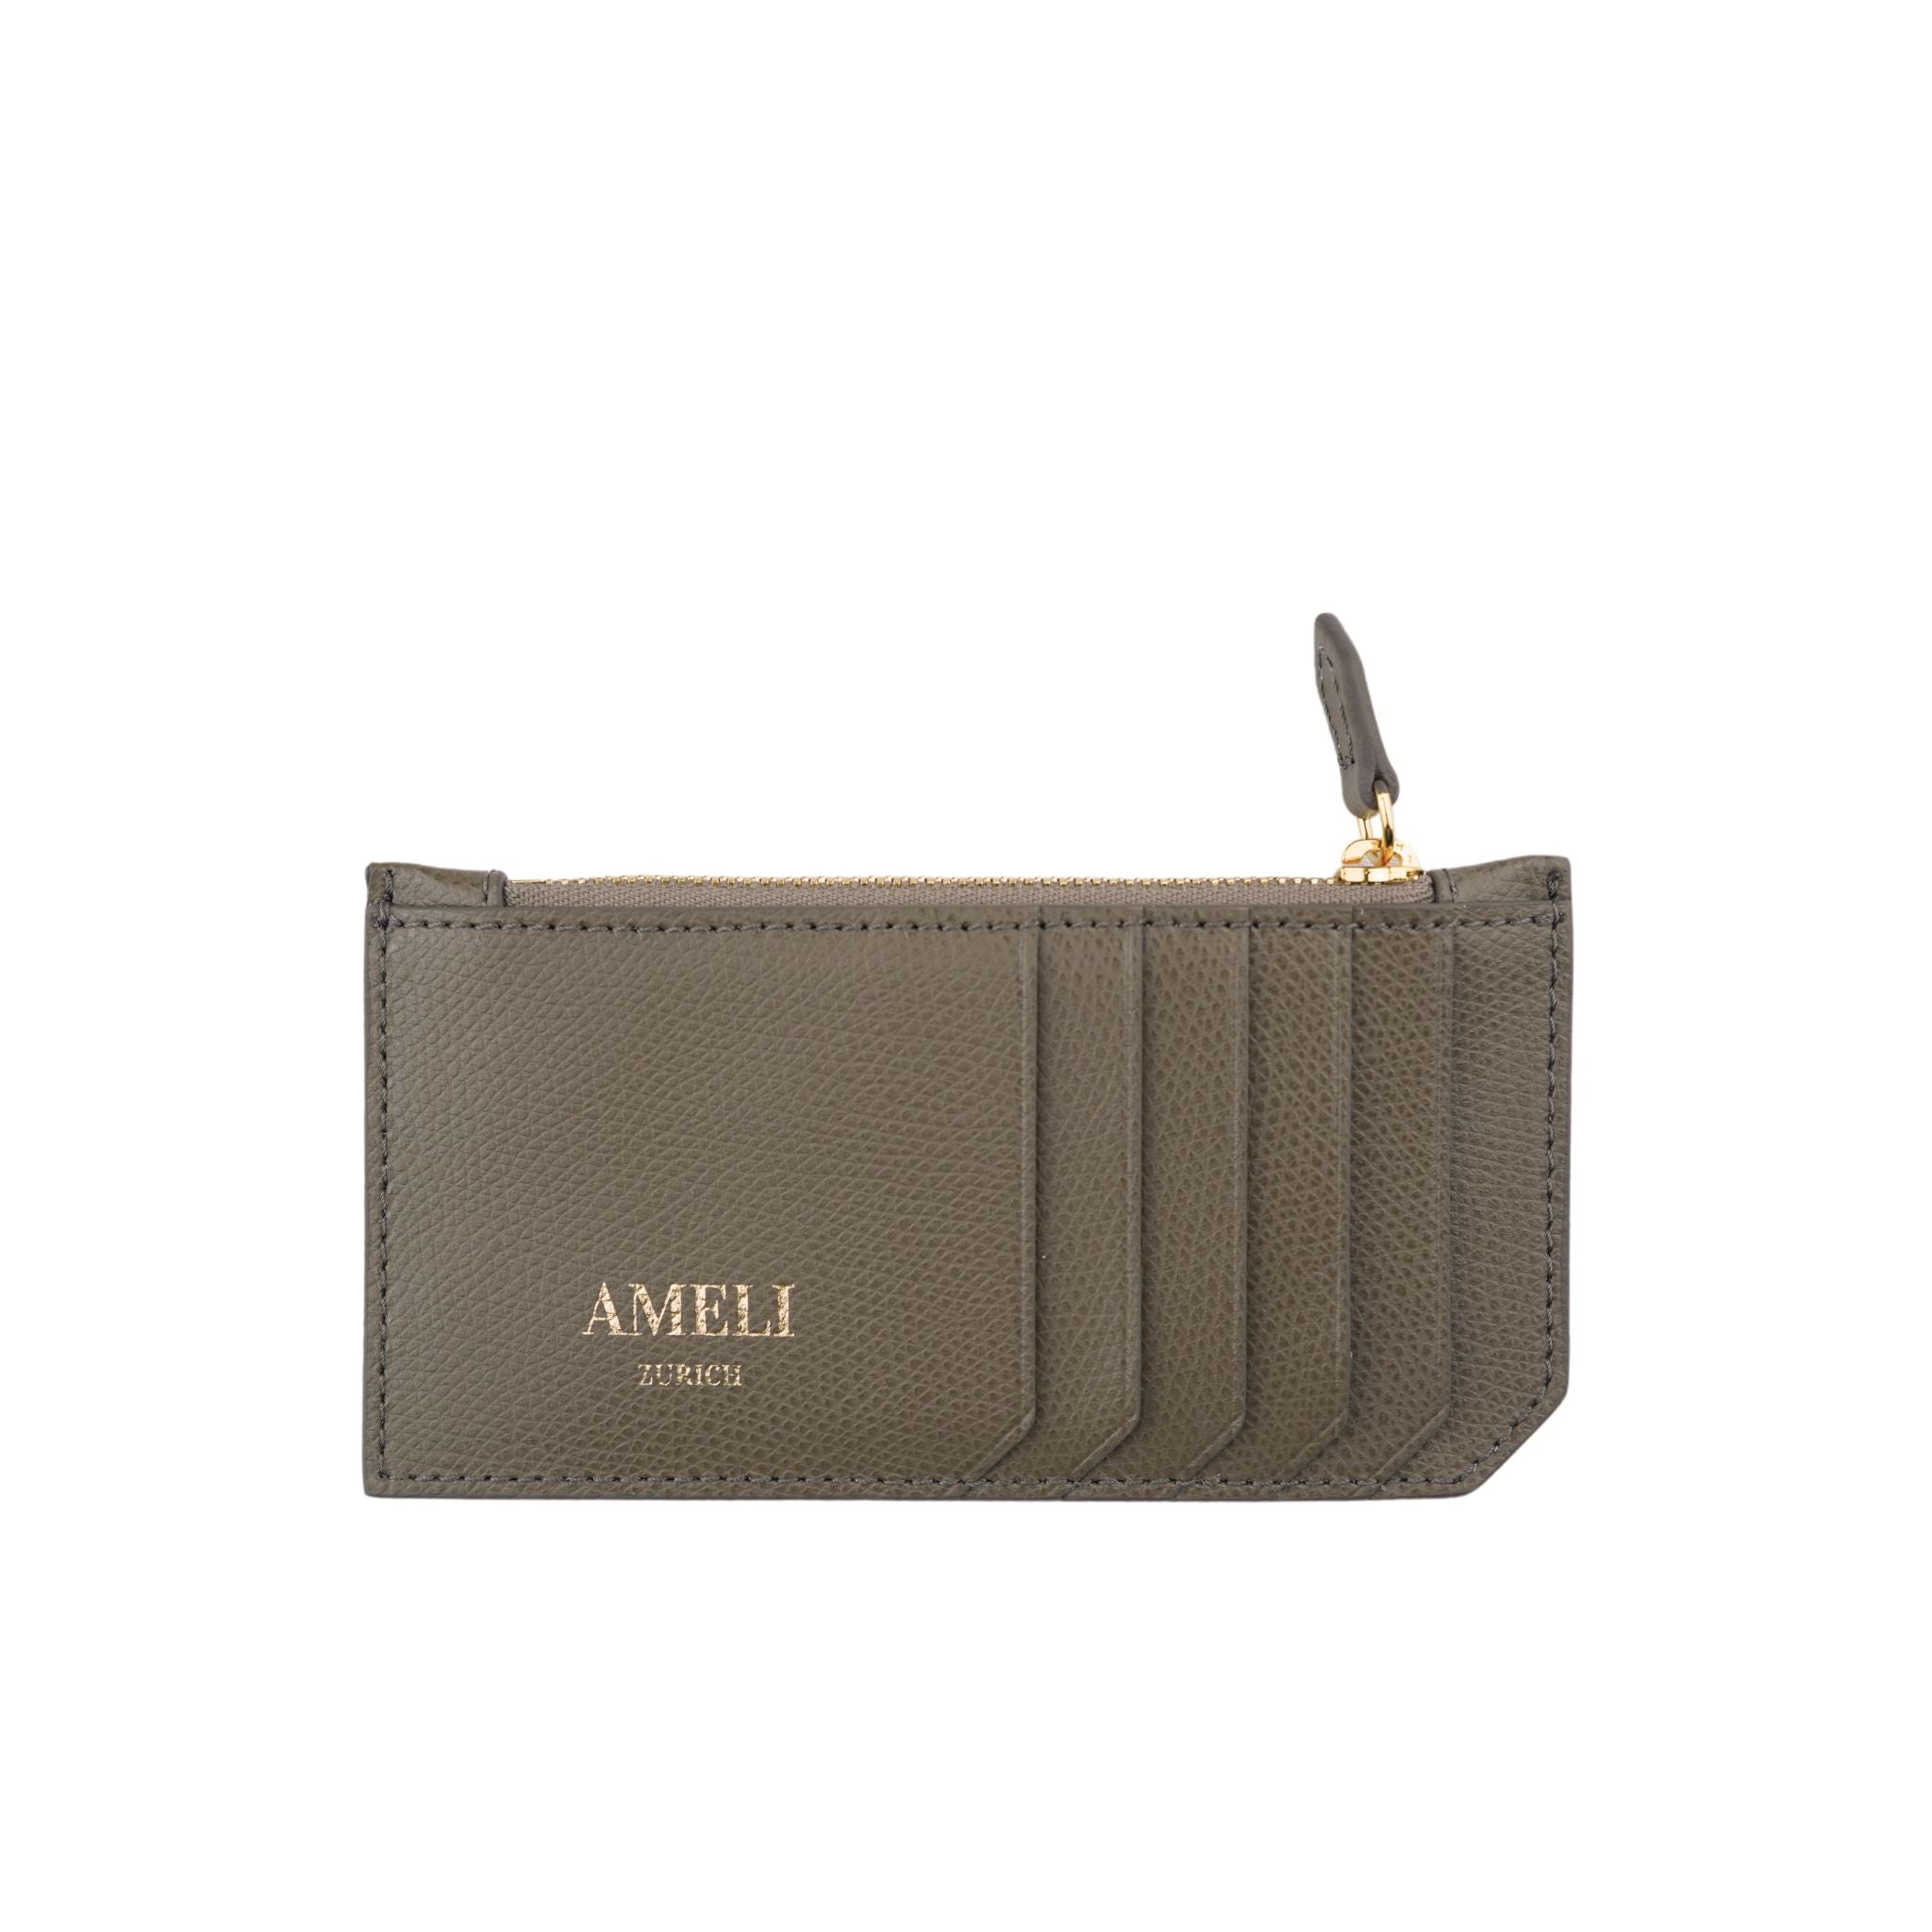 AMELI Zurich | Cardholder | Greige | Pebbled Leather | Front